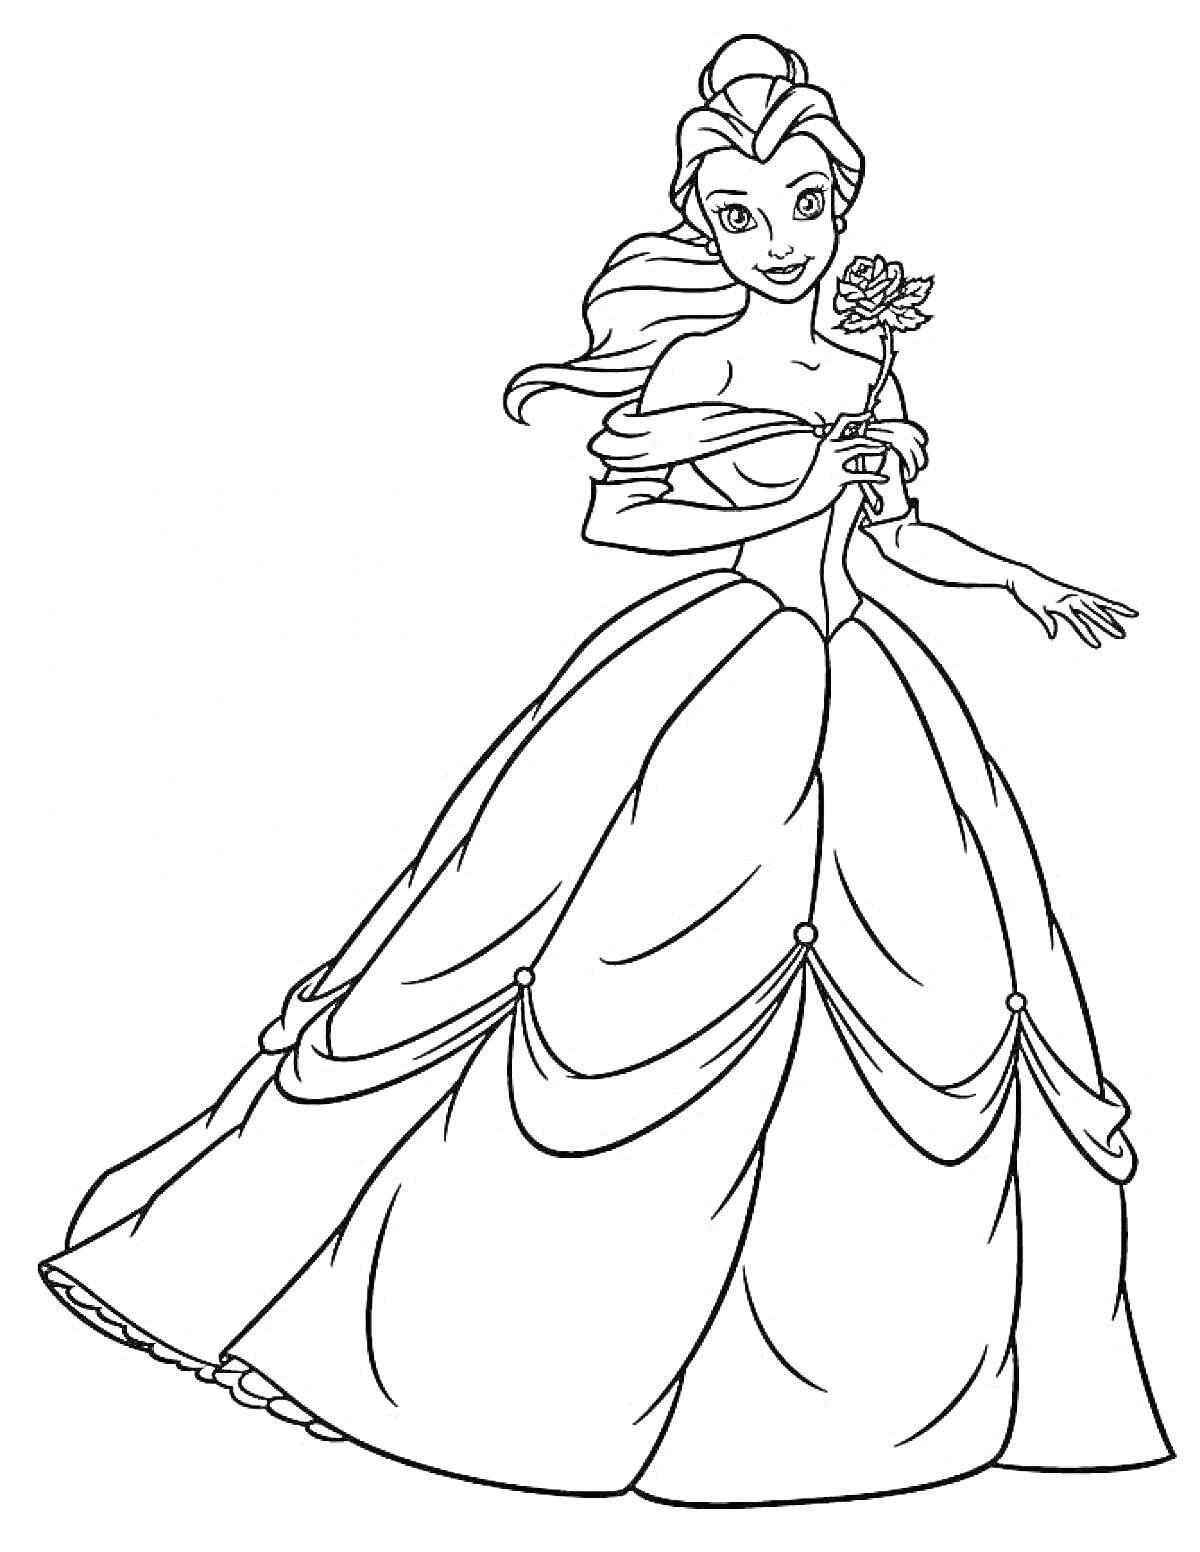 Раскраска Принцесса Бель с розой в руке в пышном платье